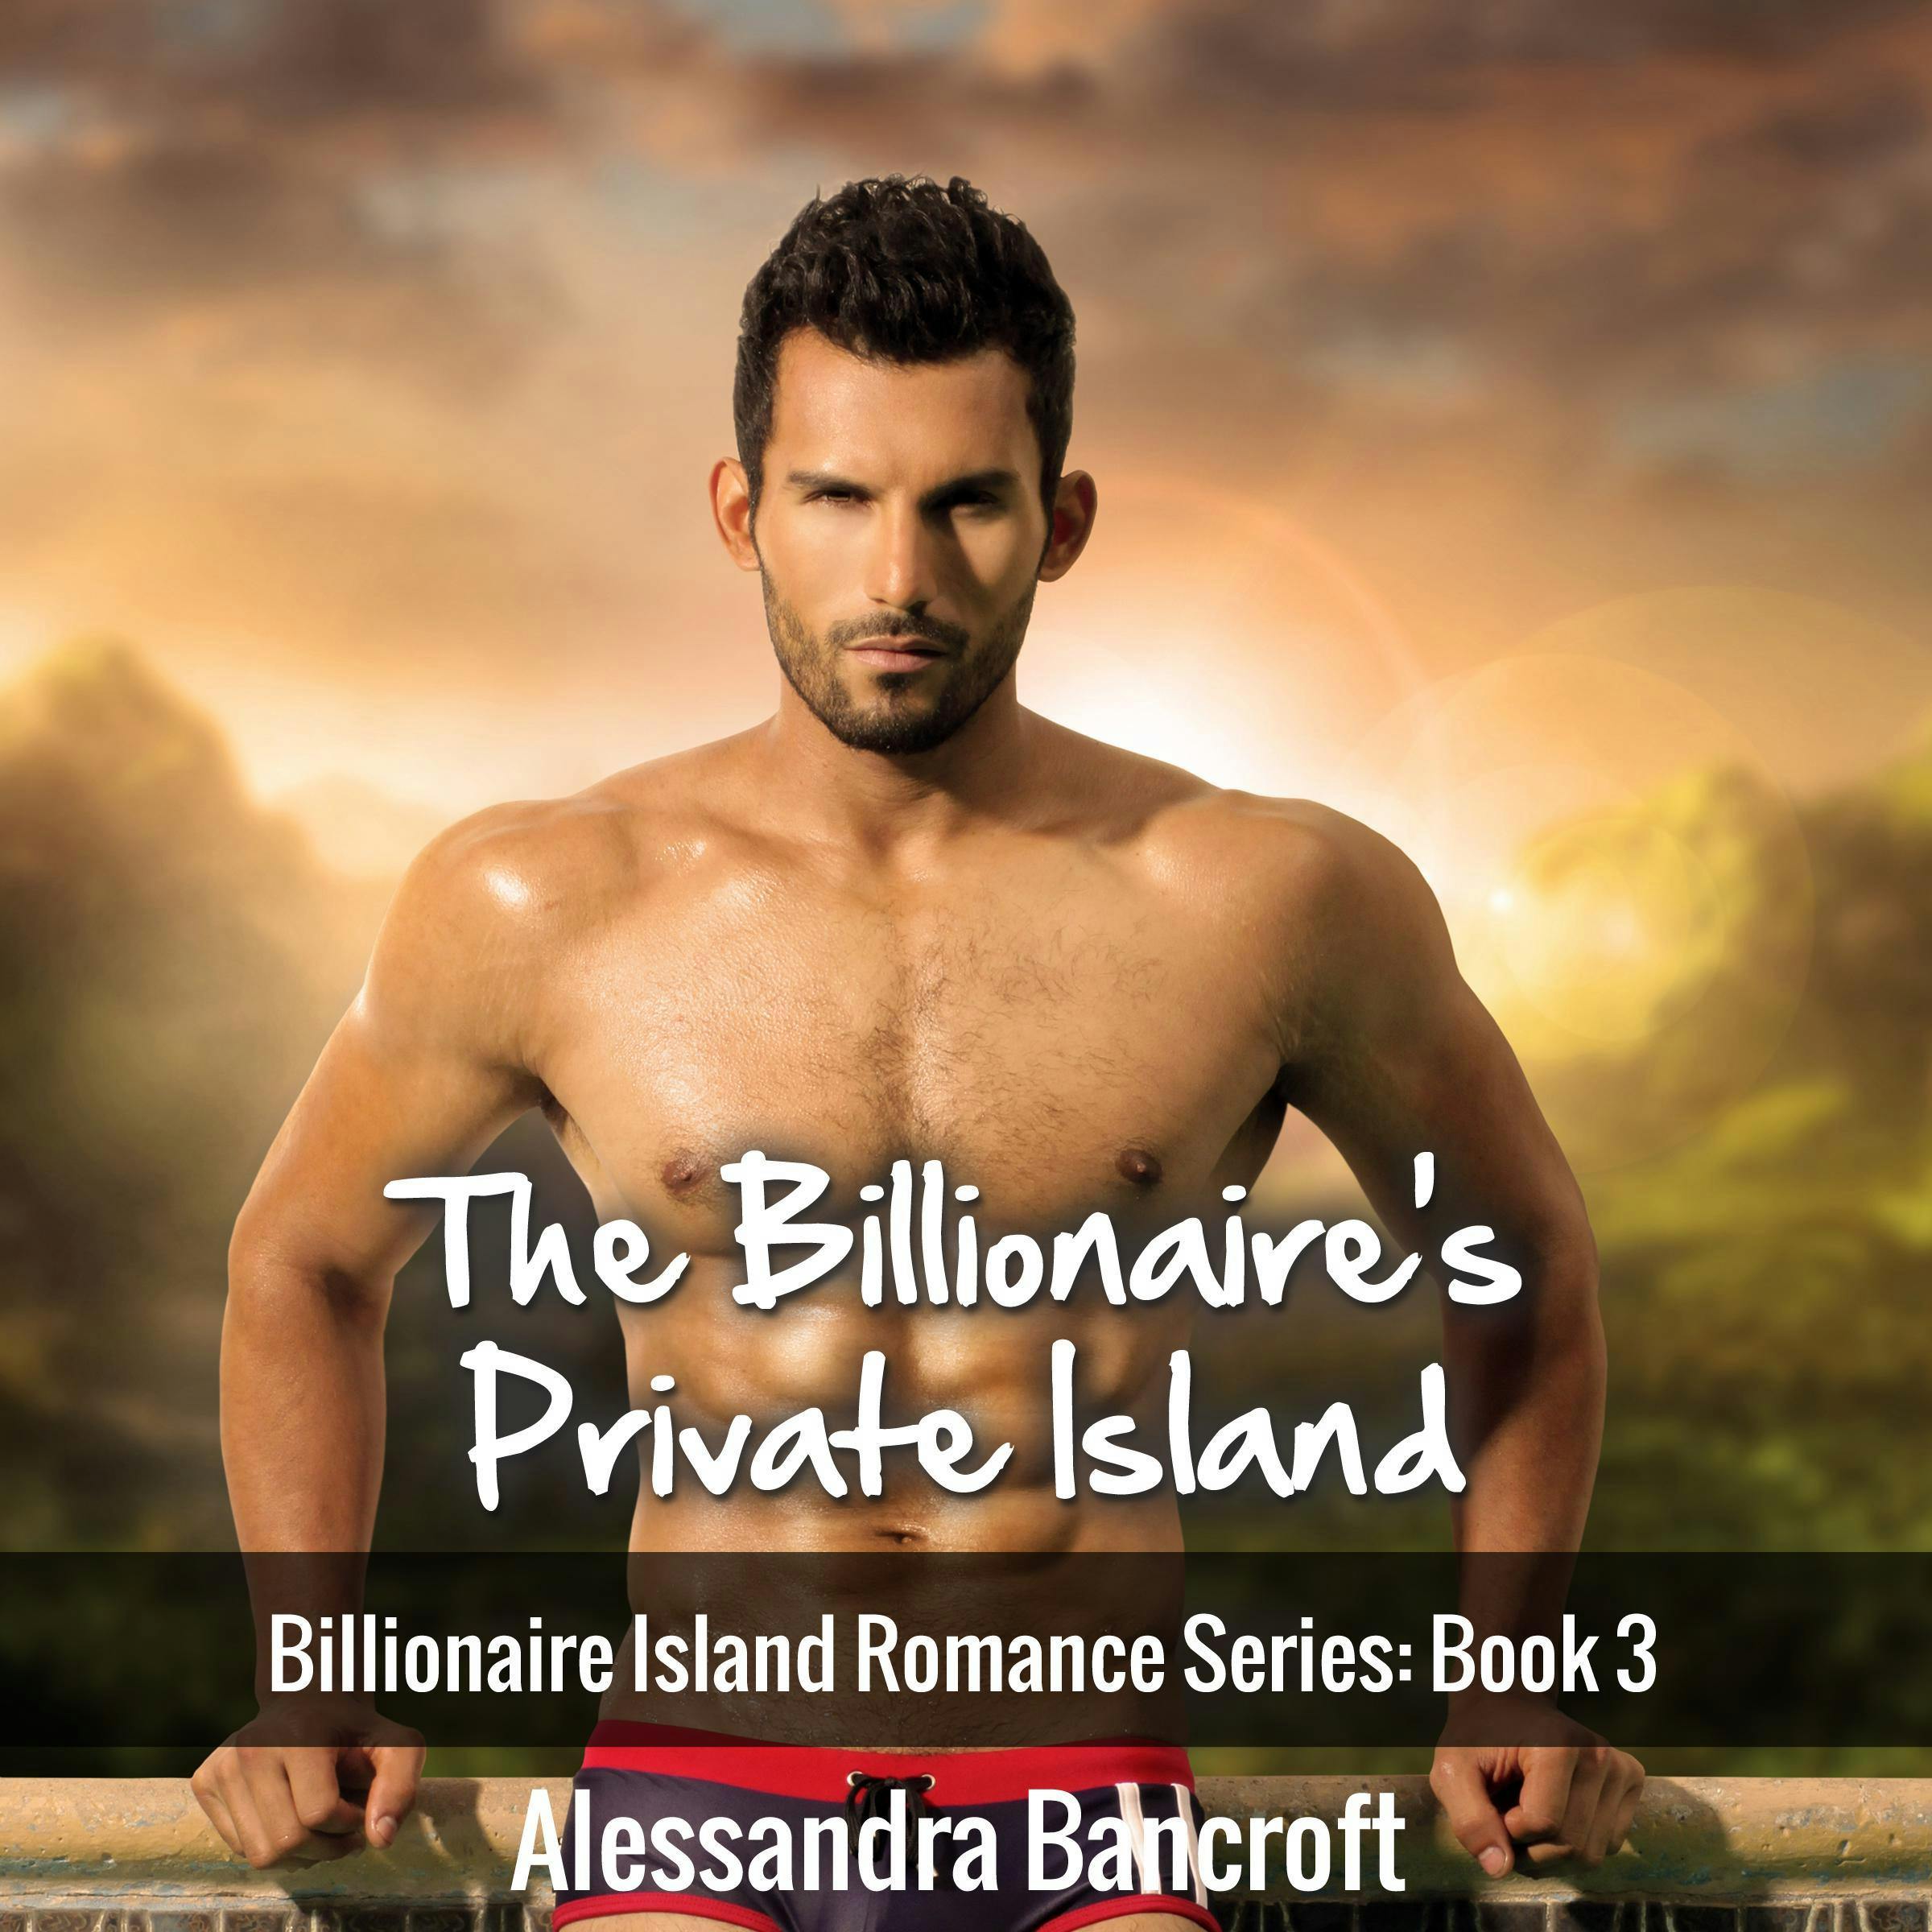 The Billionaire's Private Island: Billionaire Island Romance Series: Book 3 - Alessandra Bancroft